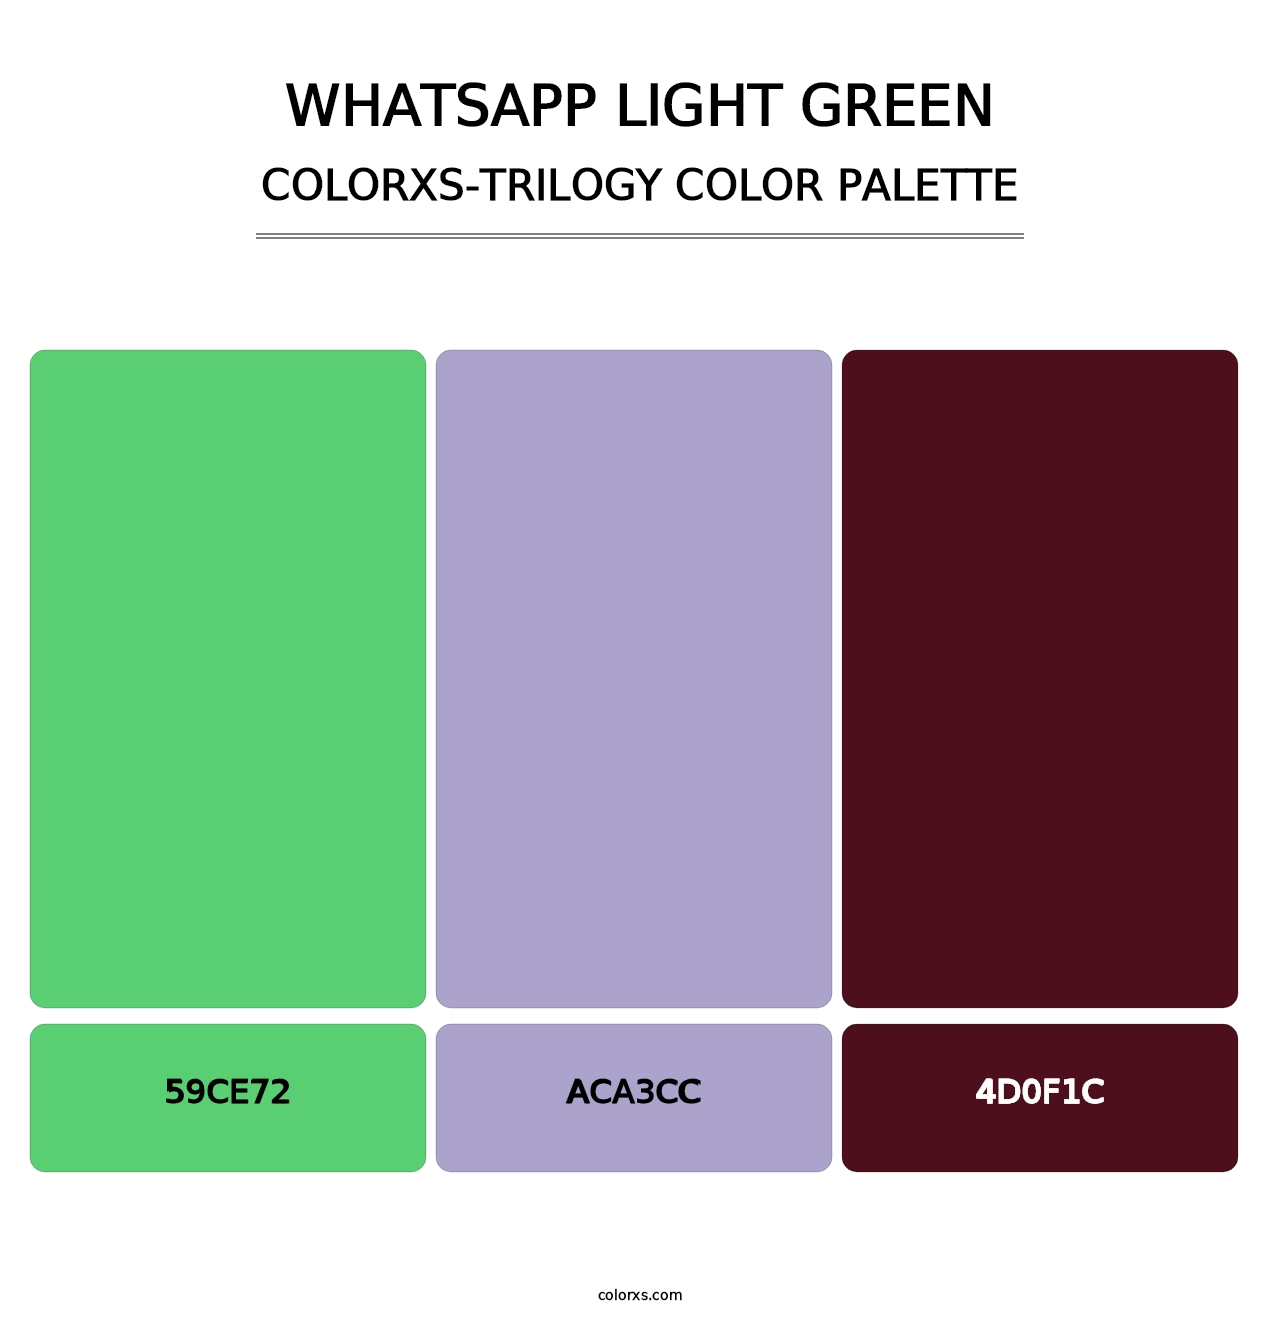 WhatsApp Light Green - Colorxs Trilogy Palette